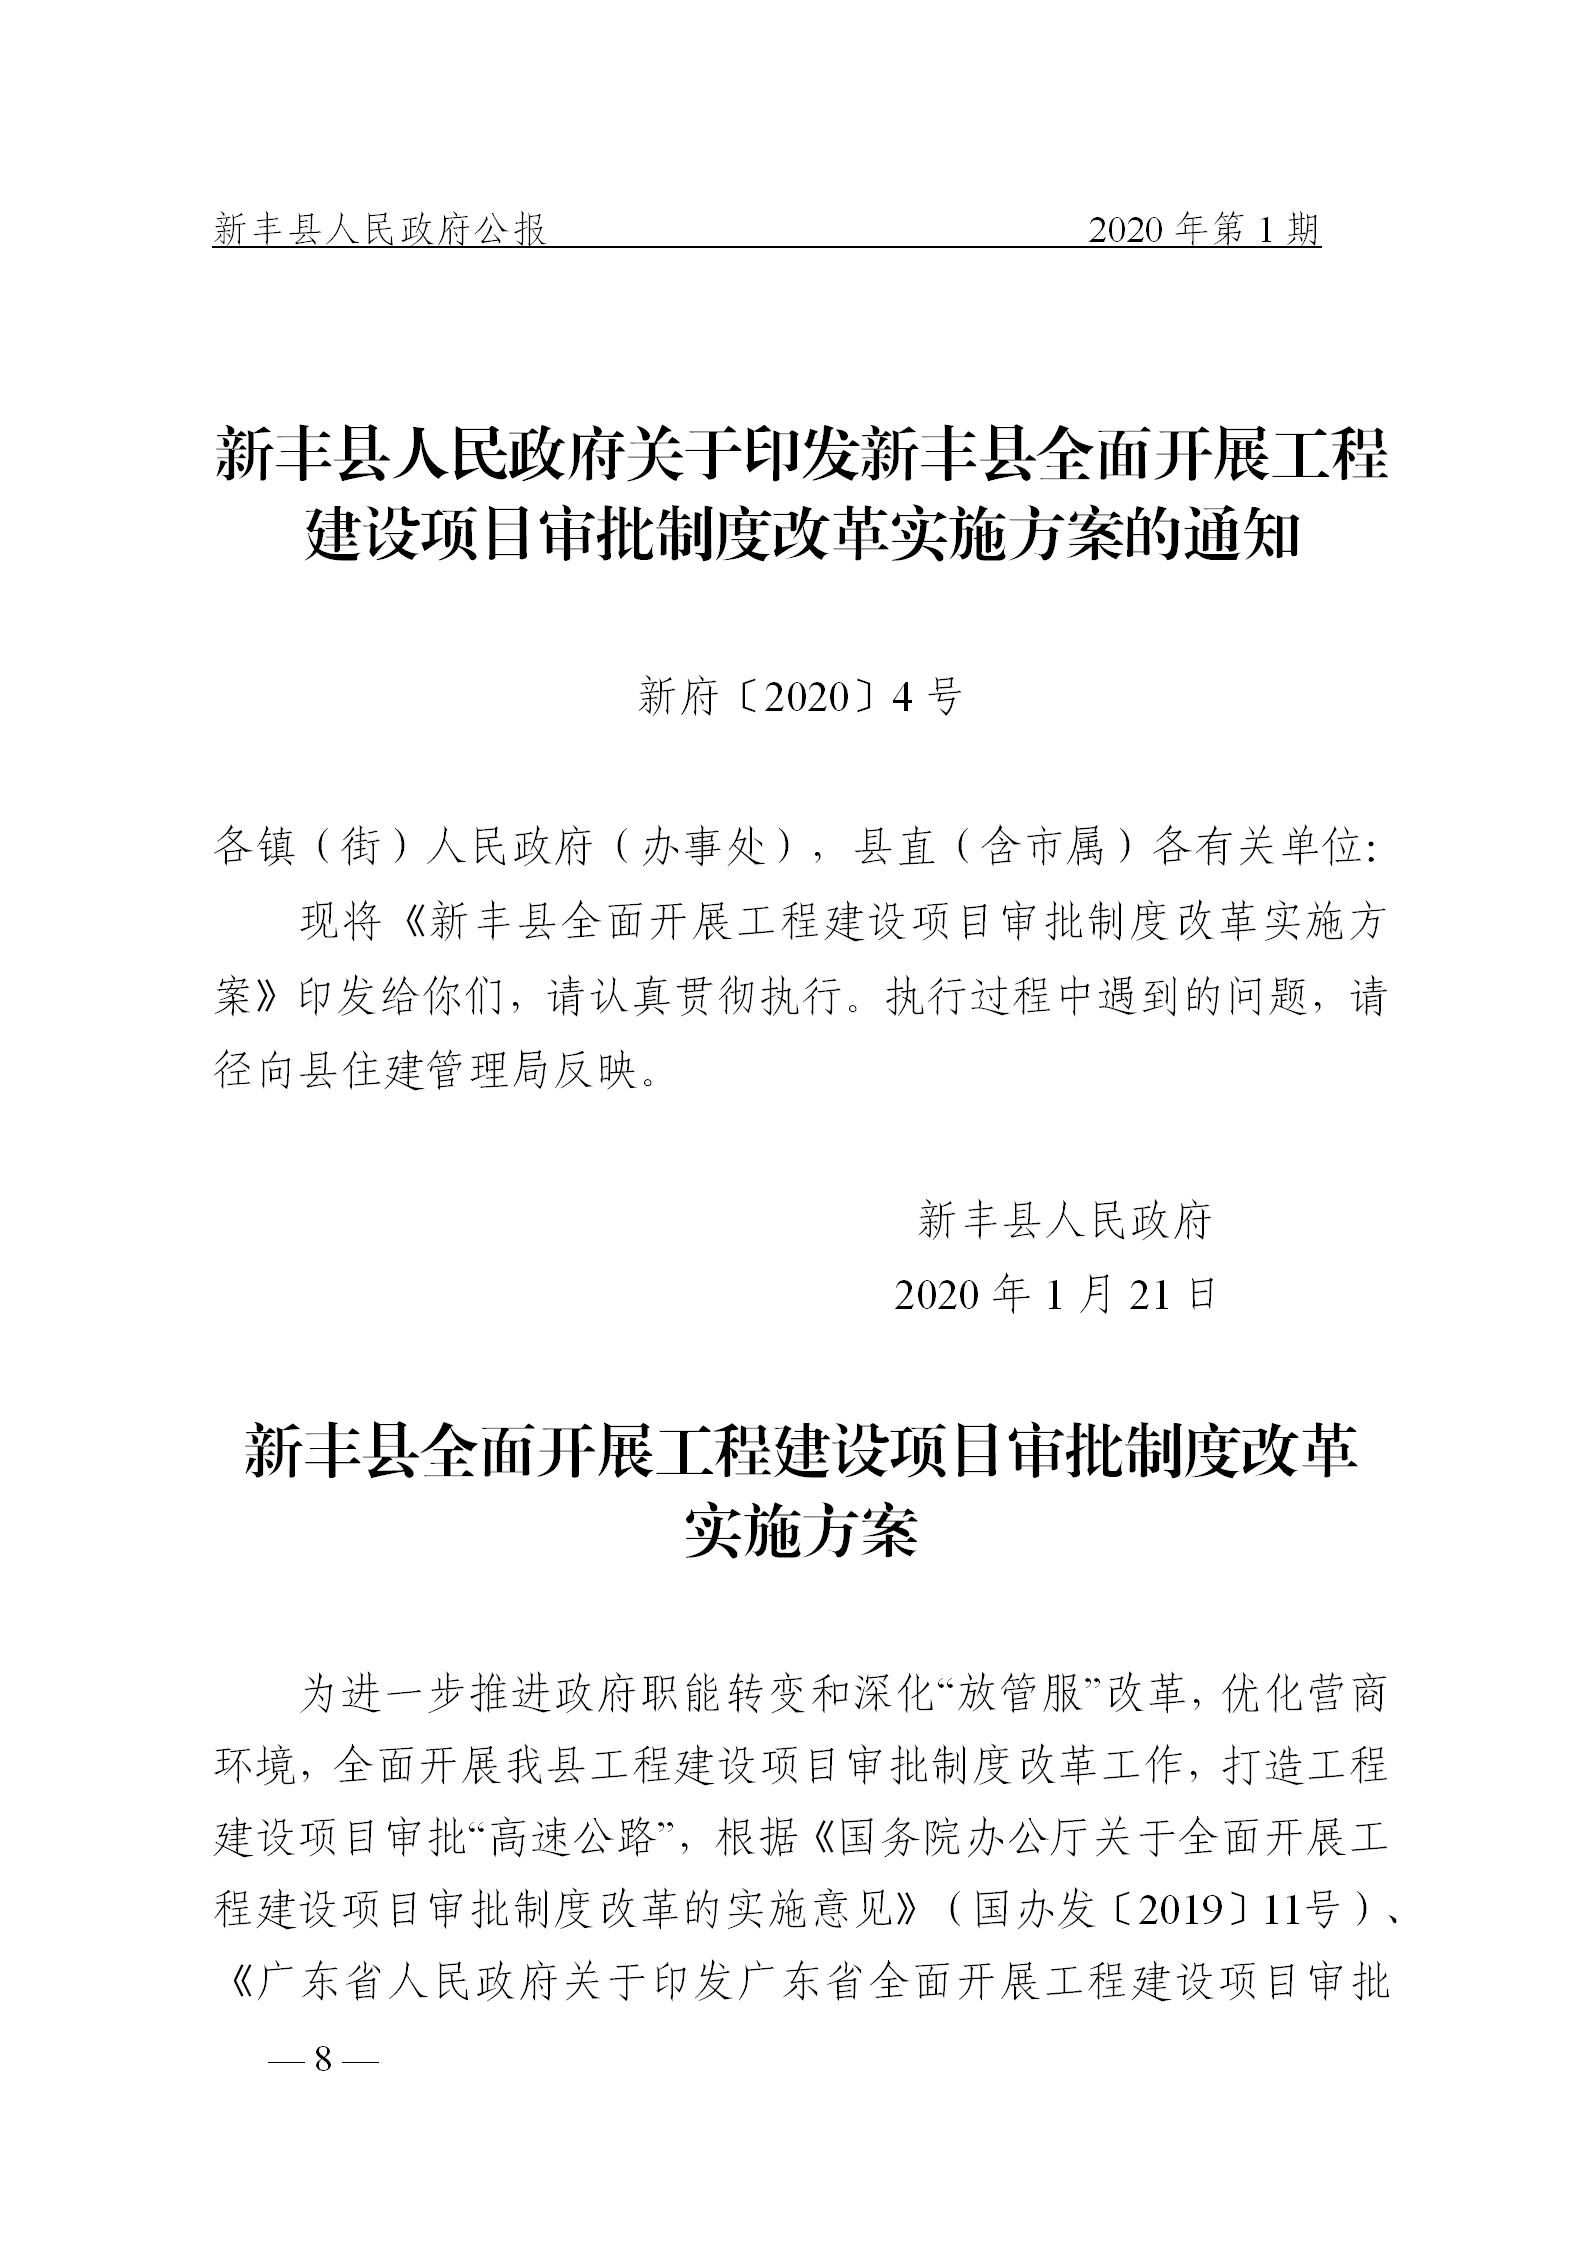 《新丰县人民政府公报》2020年第1期(1)_08.png